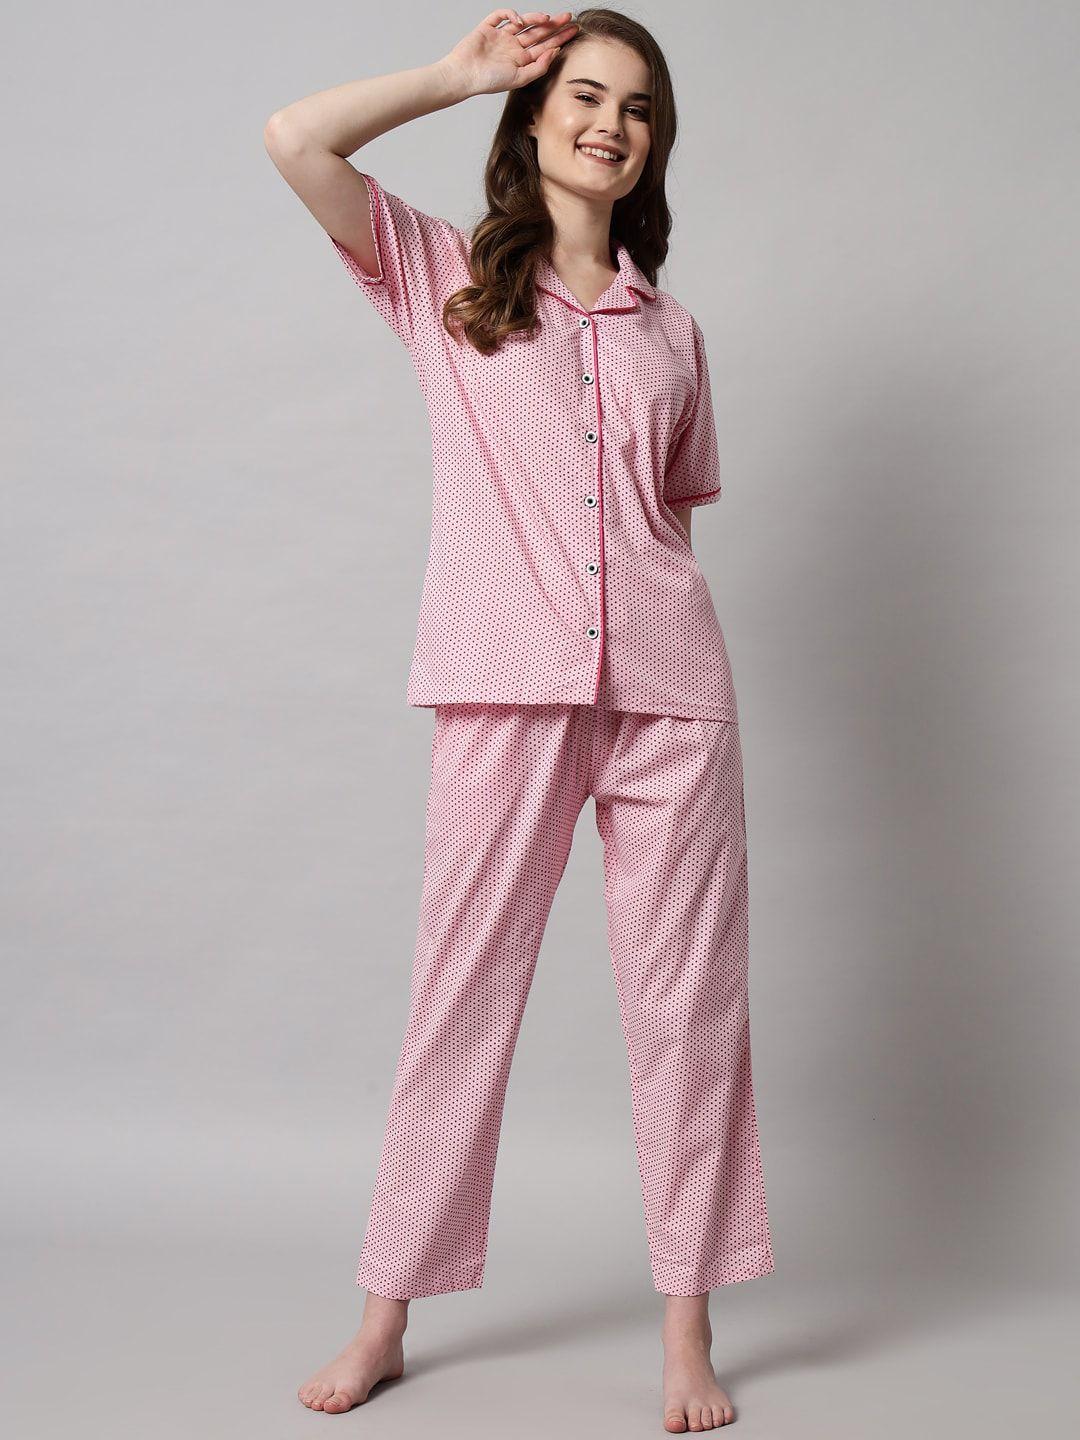 sephani women pink polka dot printed night suit plus size